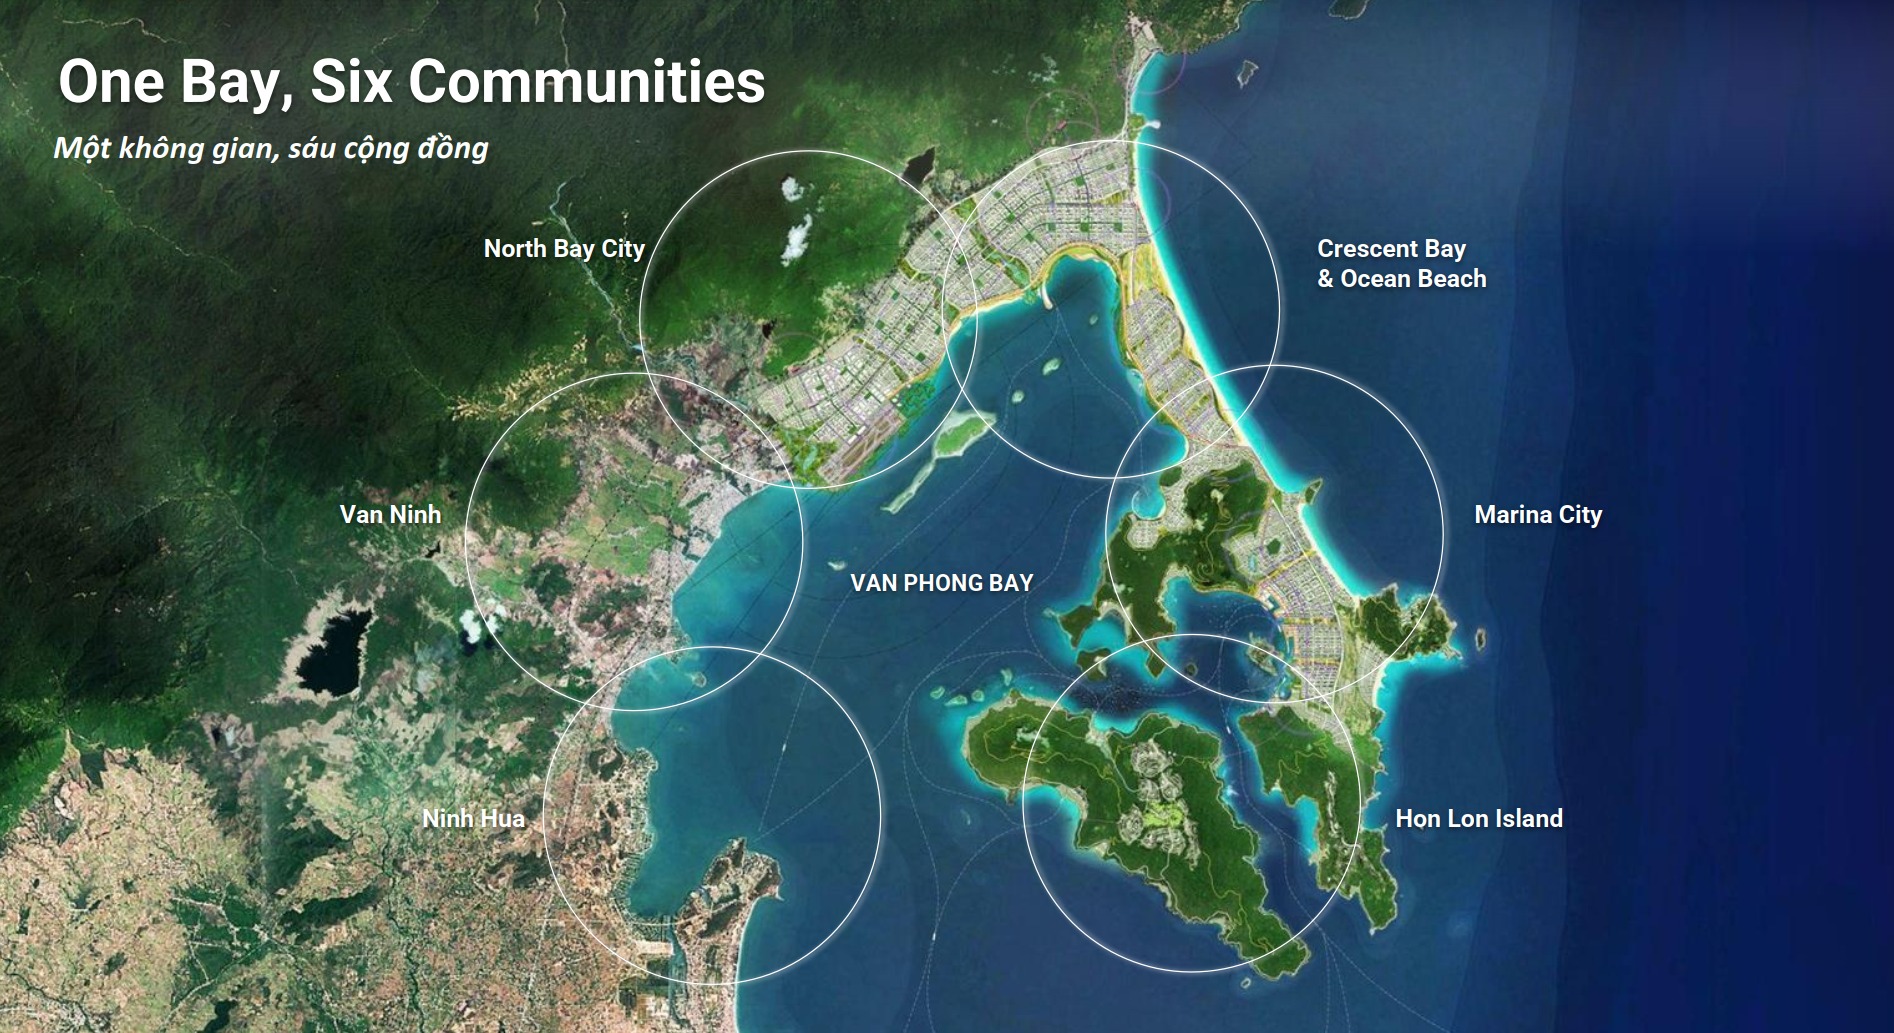 Đất nền Đặc khu kinh tế Bắc Vân Phong – Đón đầu quy hoạch